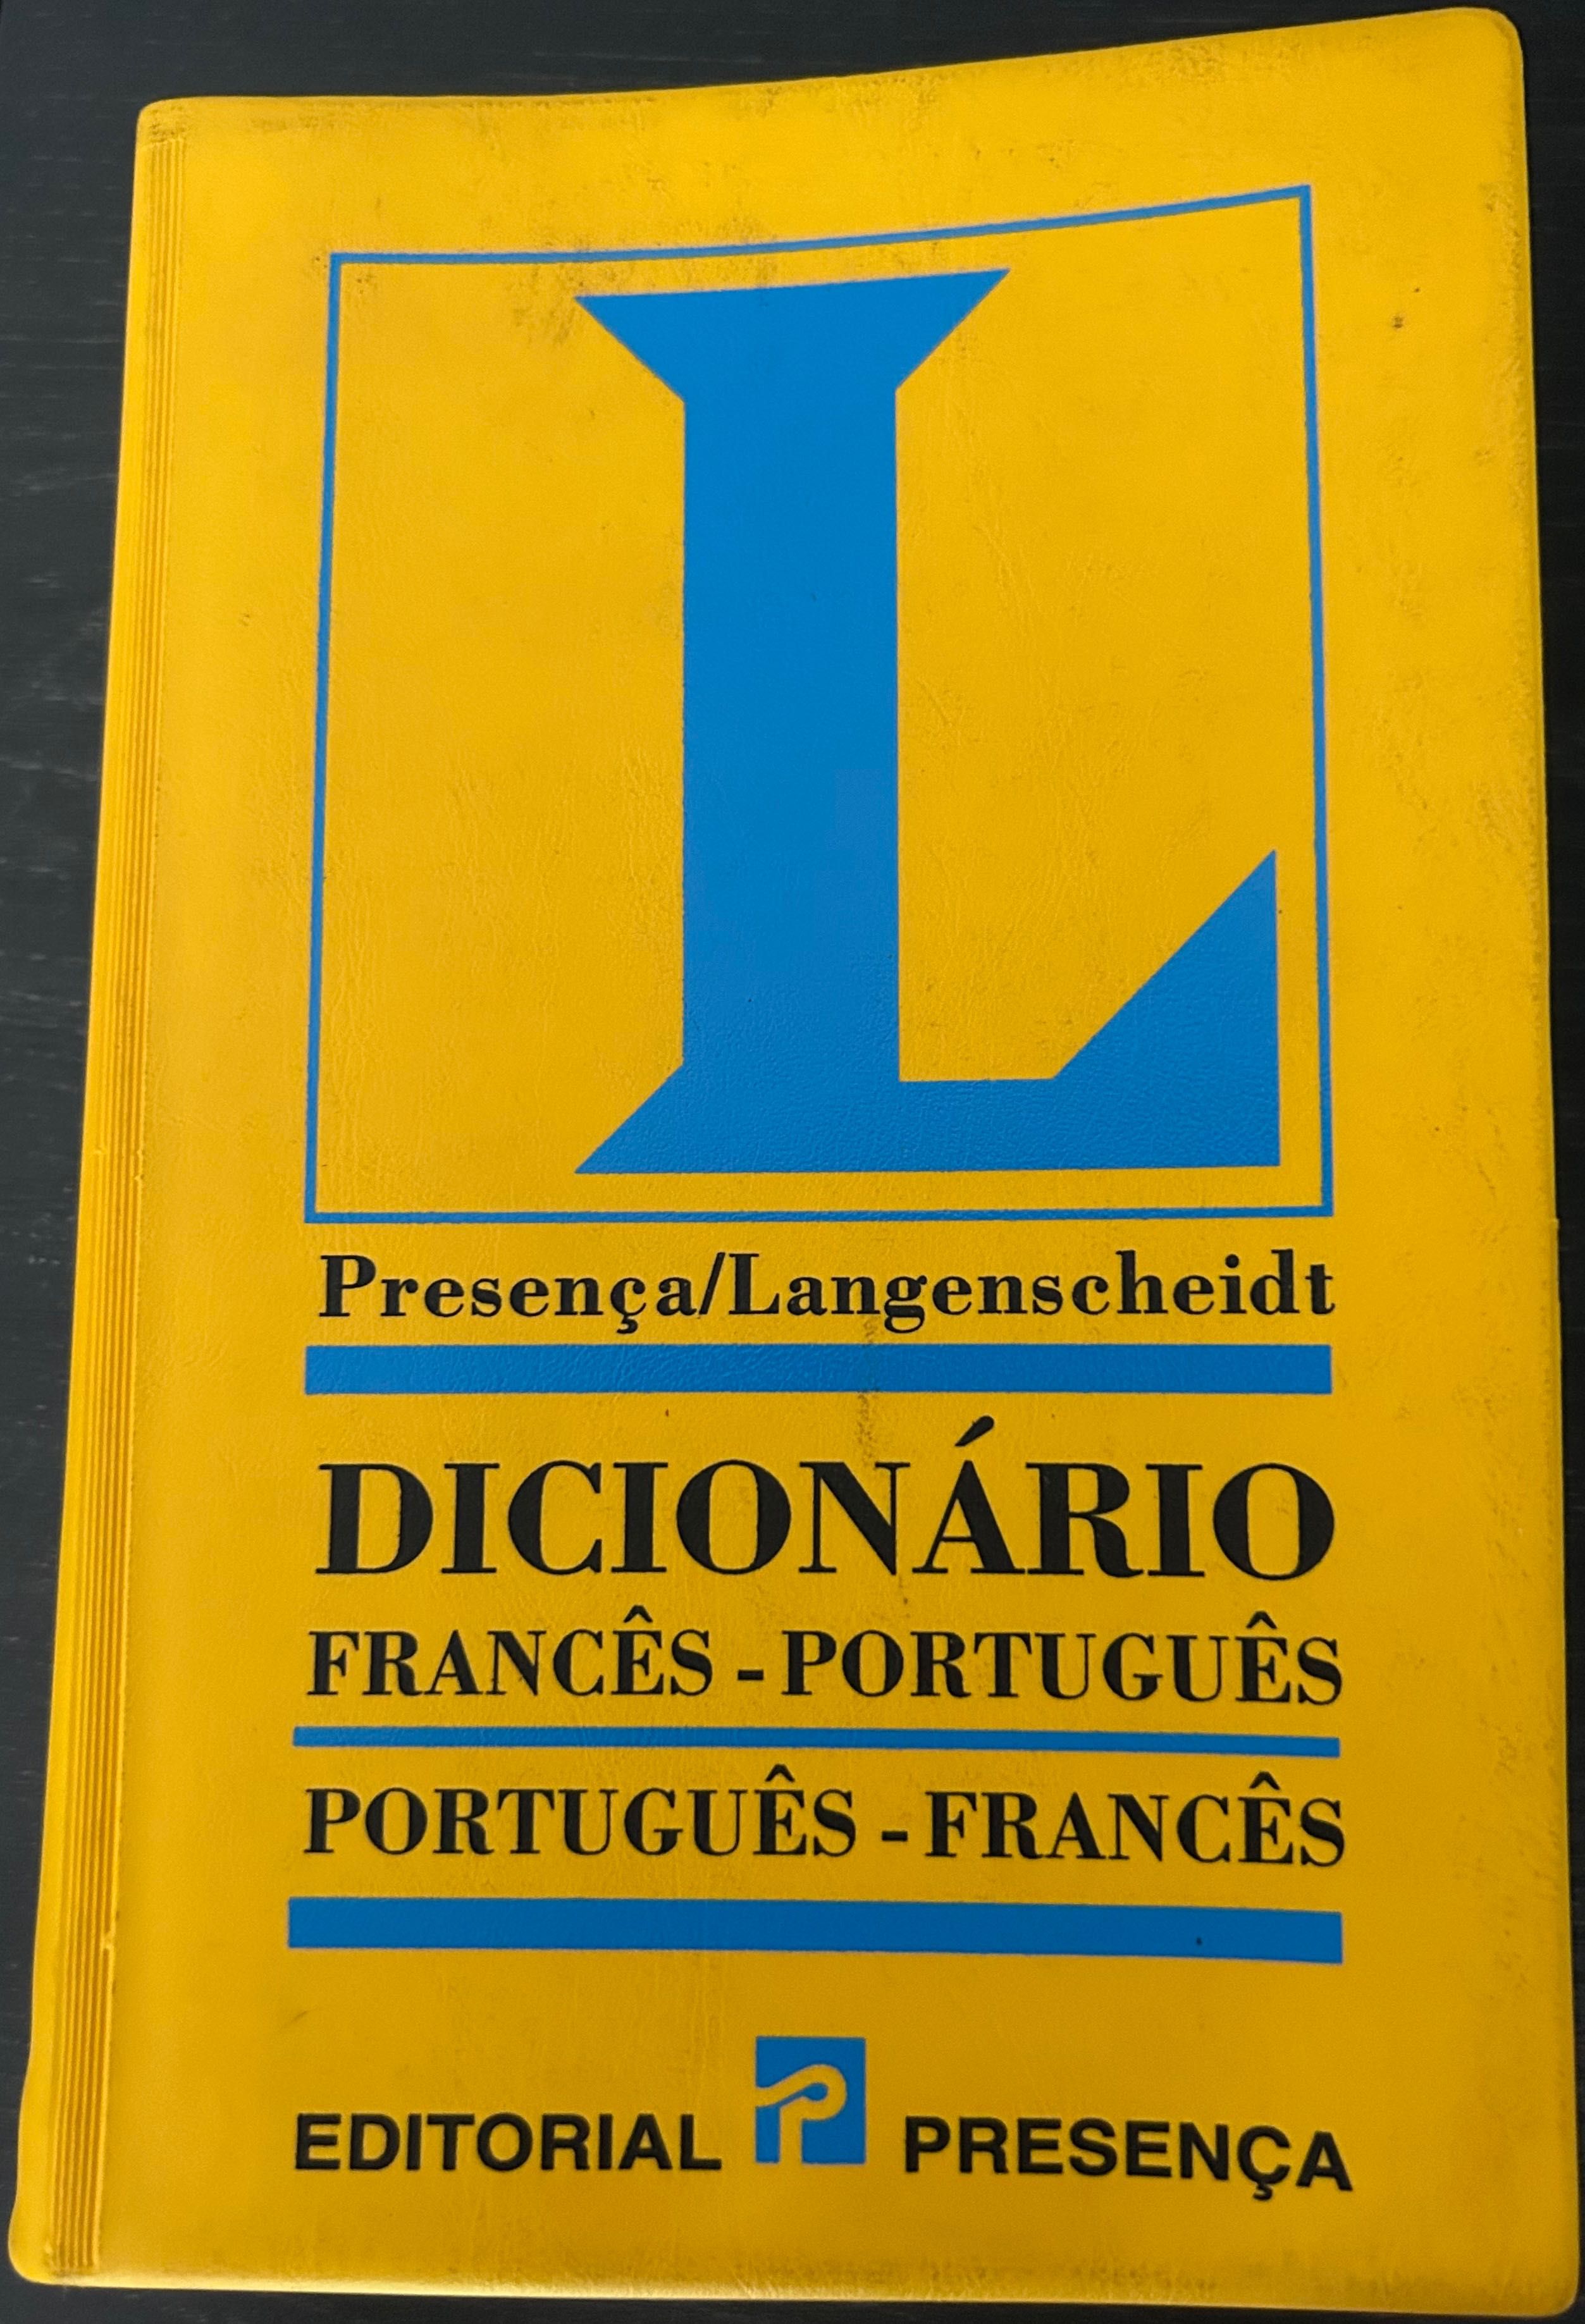 Editorial Presença Dicionário Francês-Português/Português-Francês